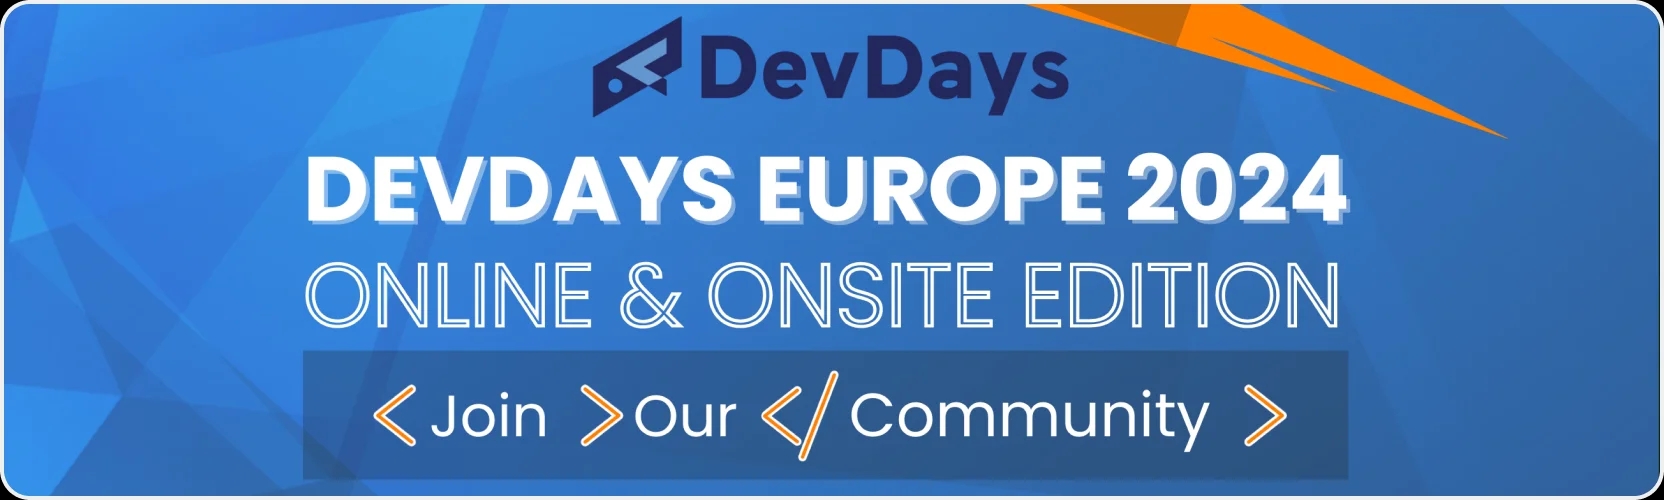 DevDays Europe